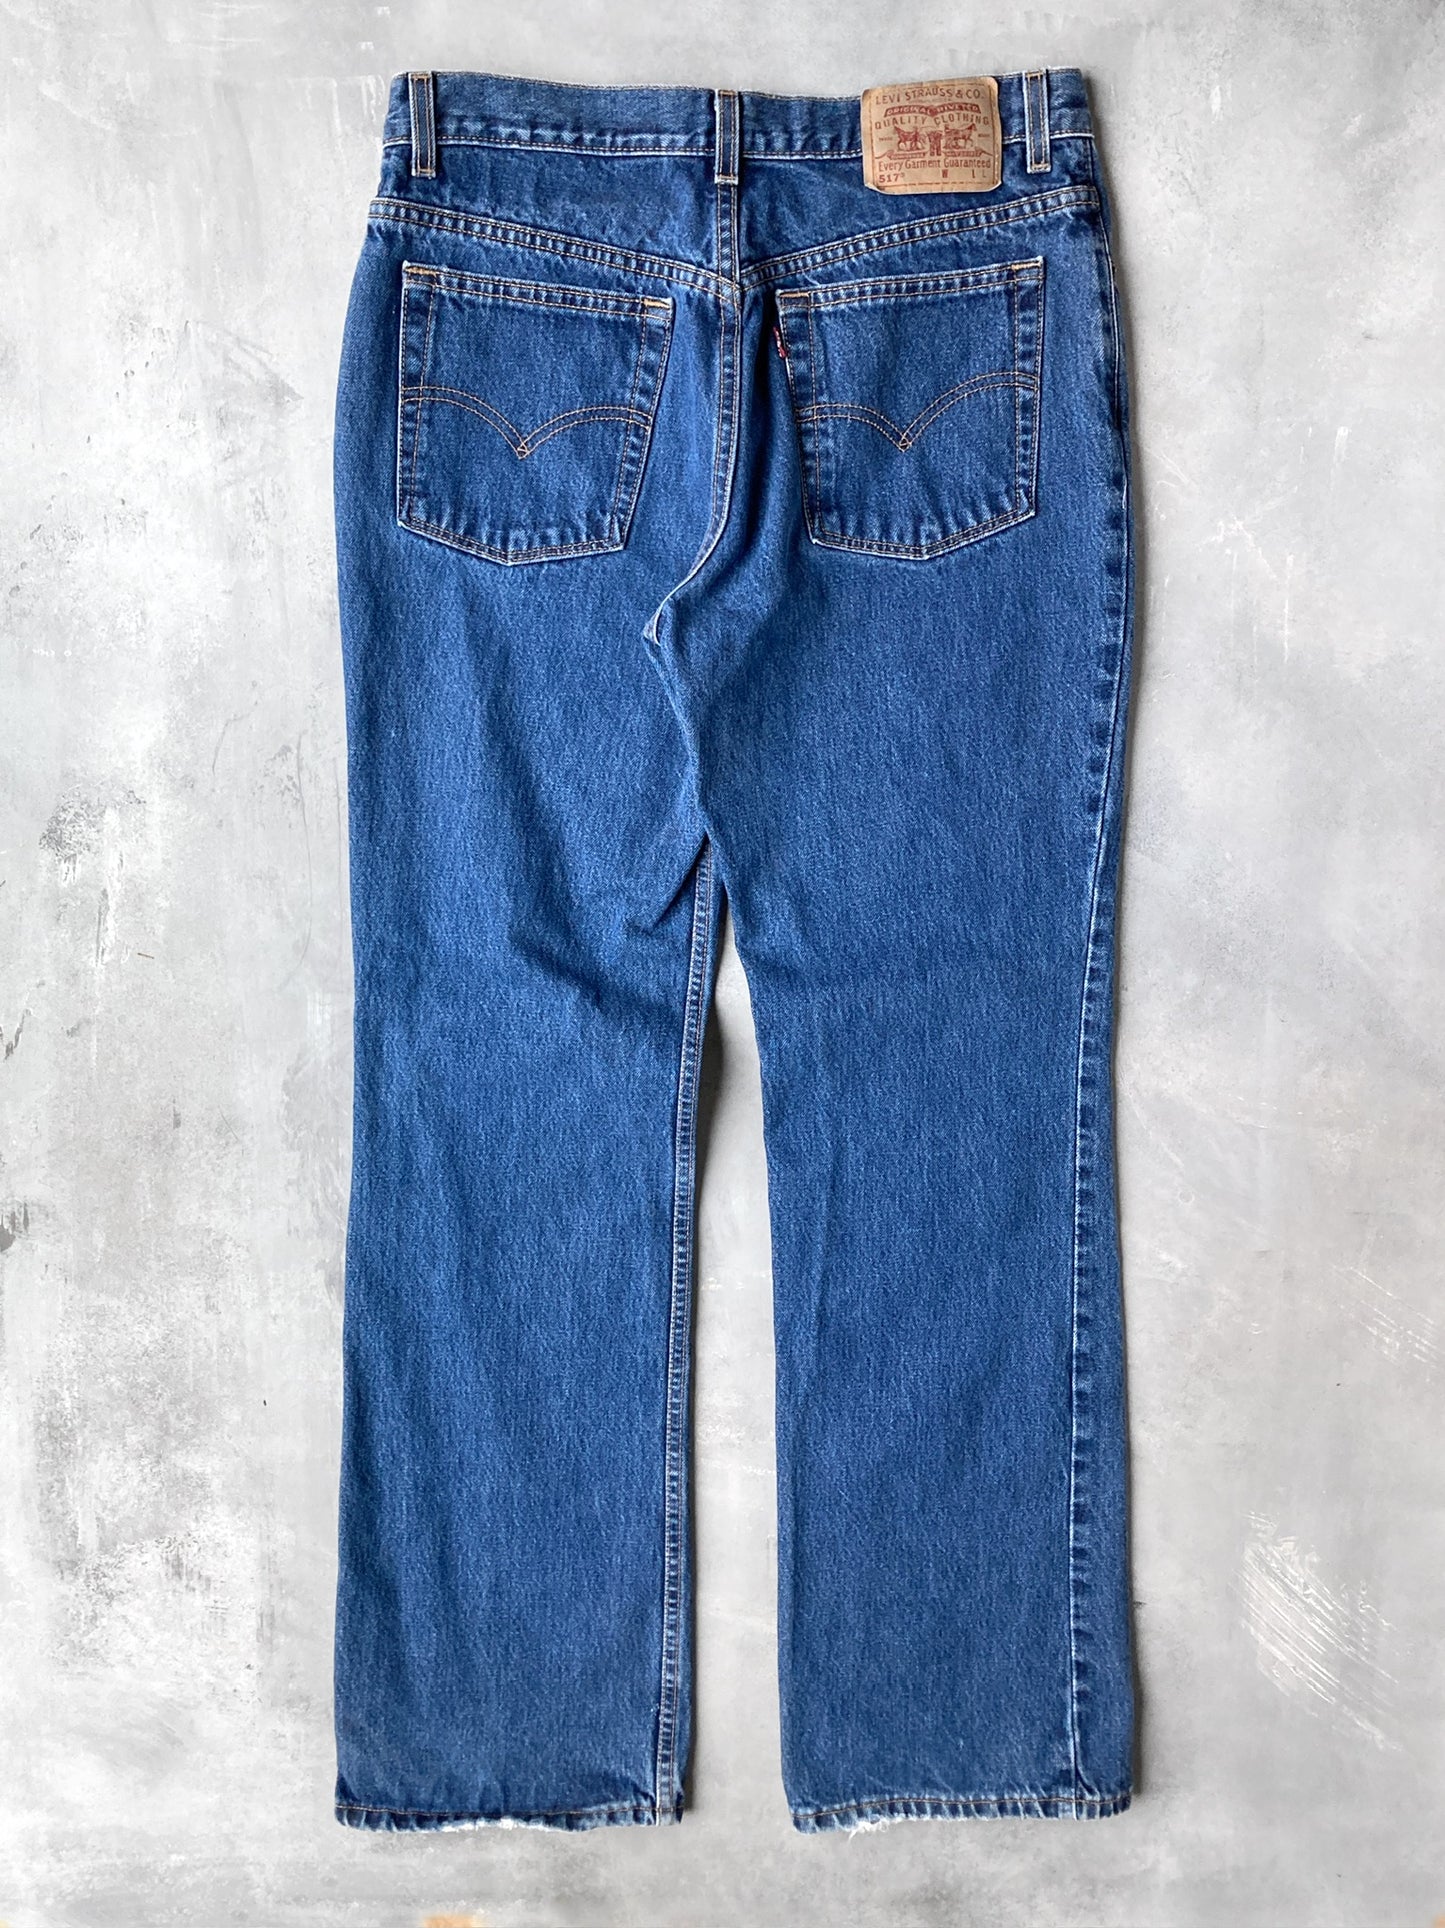 Levi's 517 Boot Cut Jeans '00 - 12